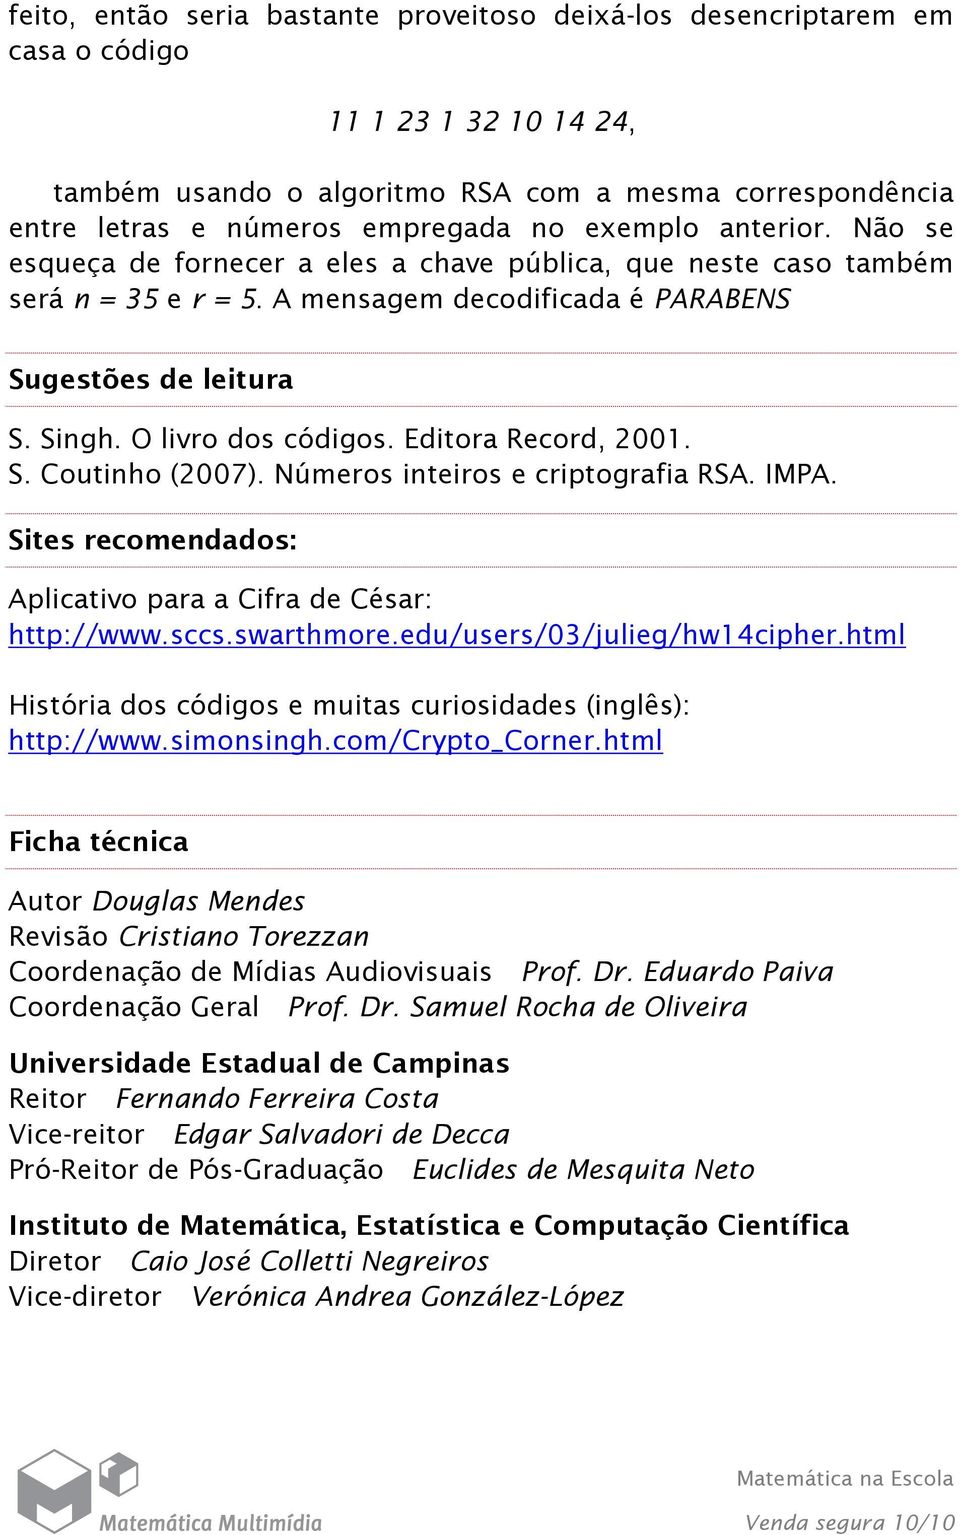 Editora Record, 2001. S. Coutinho (2007). Números inteiros e criptografia RSA. IMPA. Sites recomendados: Aplicativo para a Cifra de César: http://www.sccs.swarthmore.edu/users/03/julieg/hw14cipher.